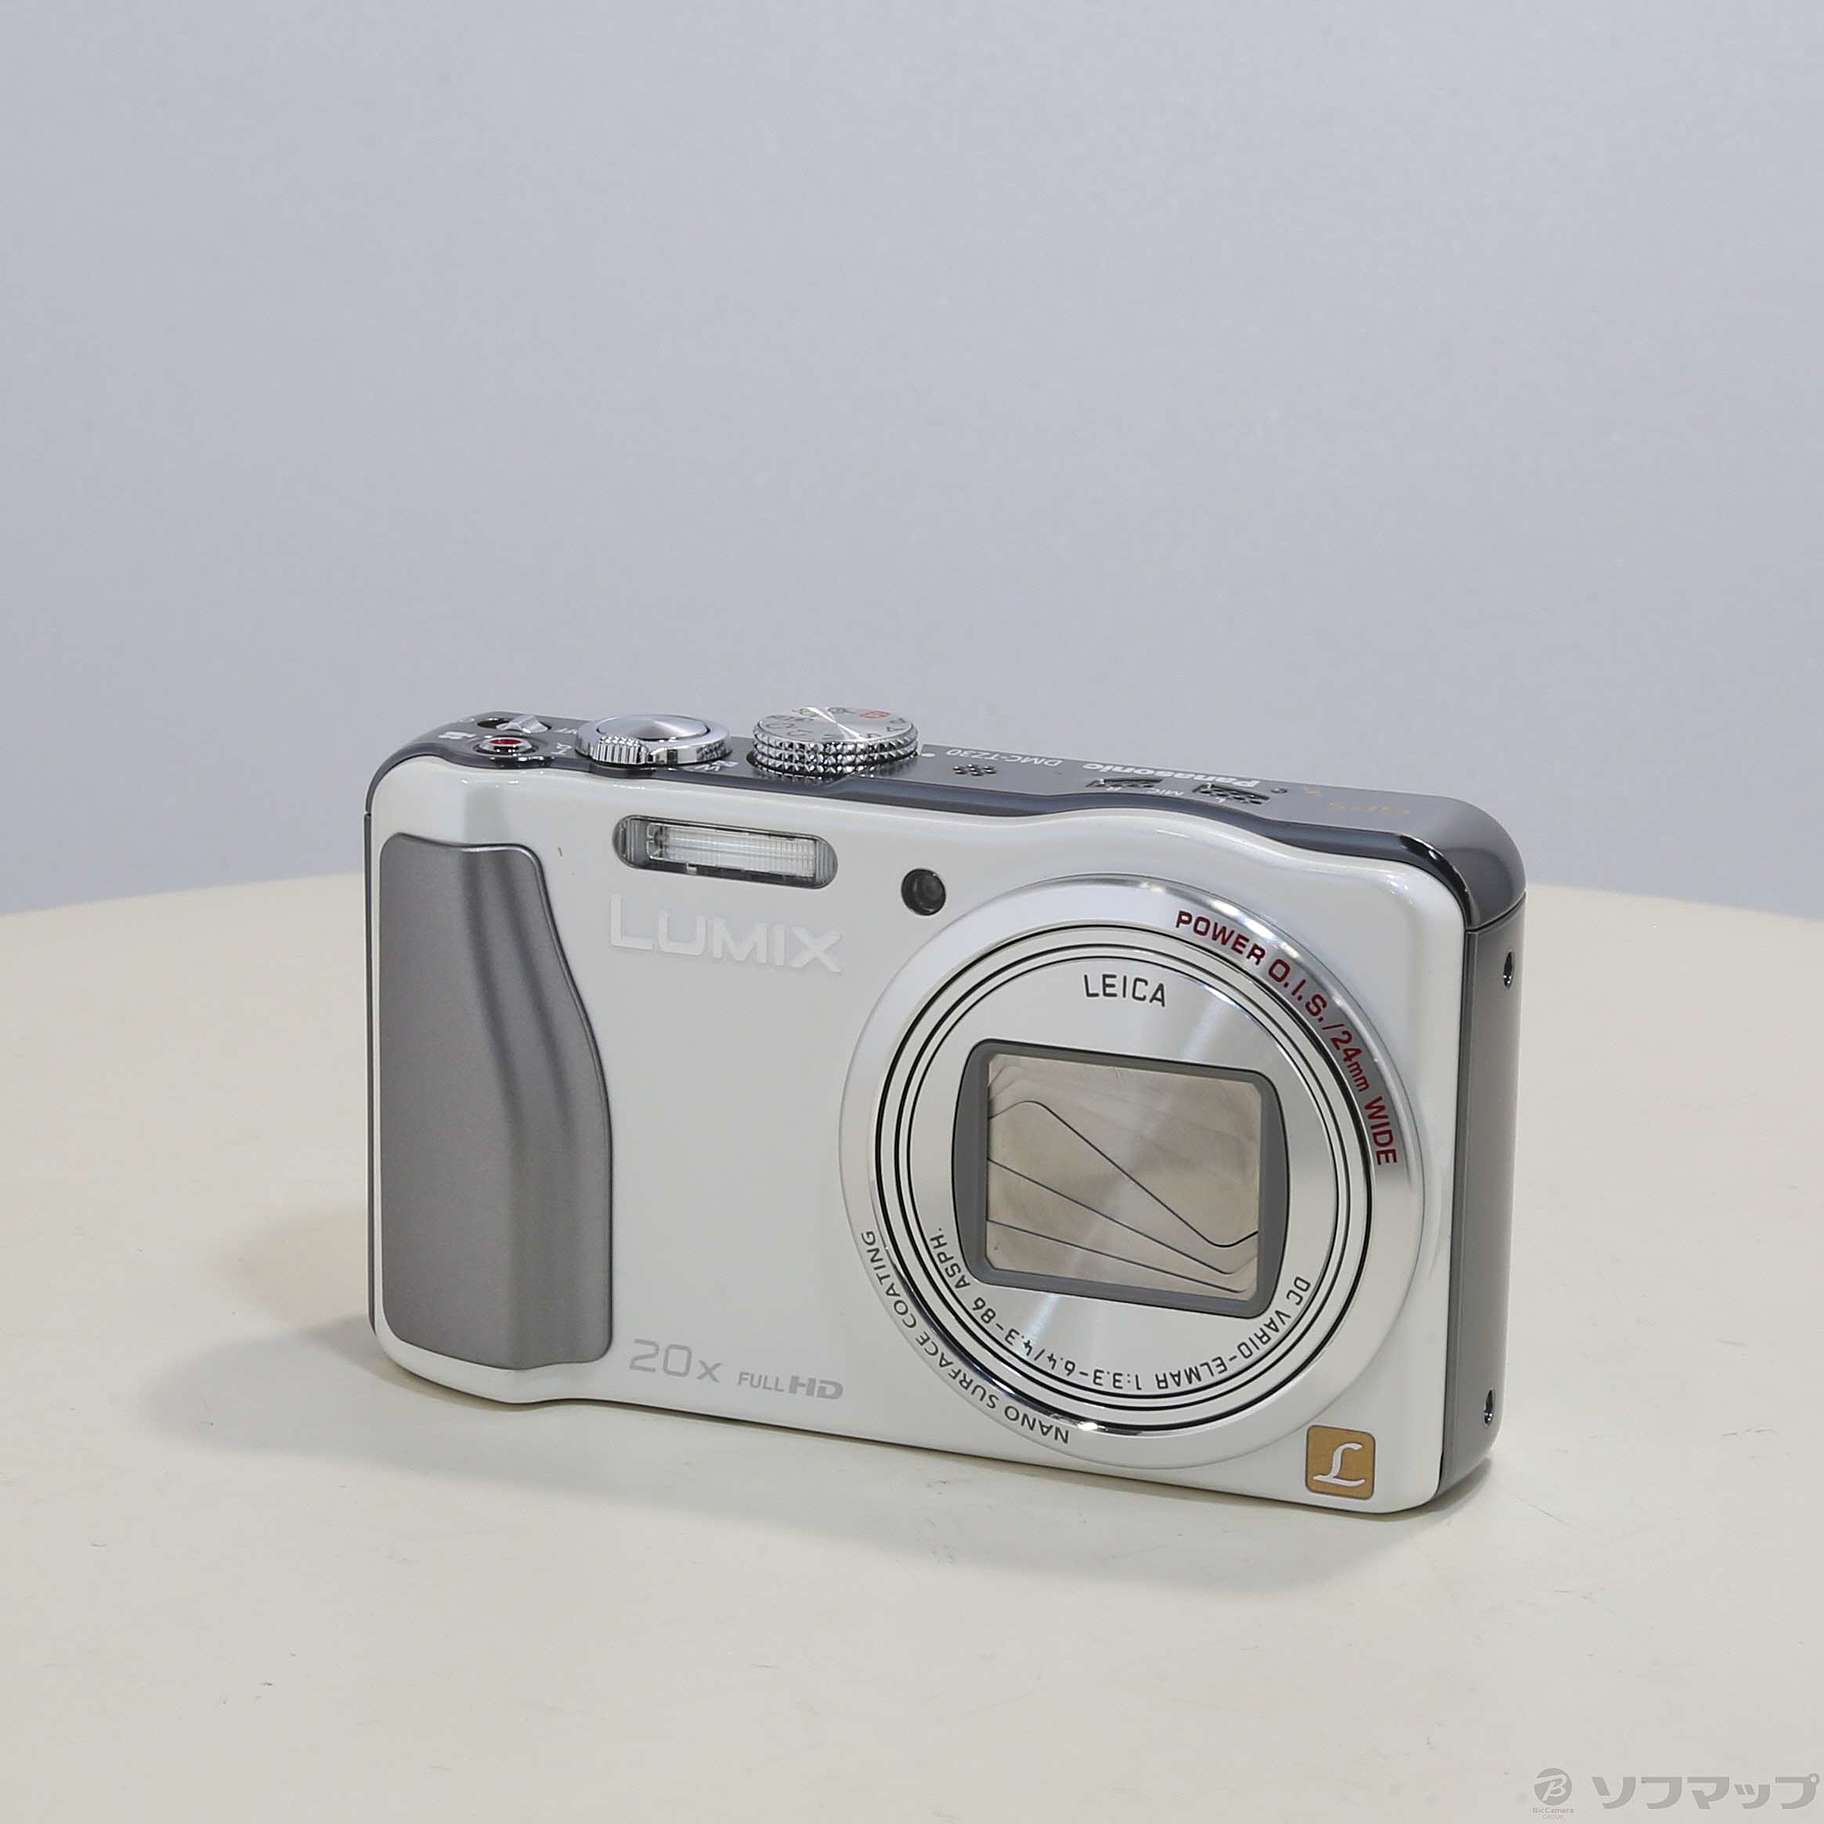 パナソニック デジタルカメラ ルミックス TZ30 光学20倍 ホワイト DMC-TZ30-W デジタルカメラ